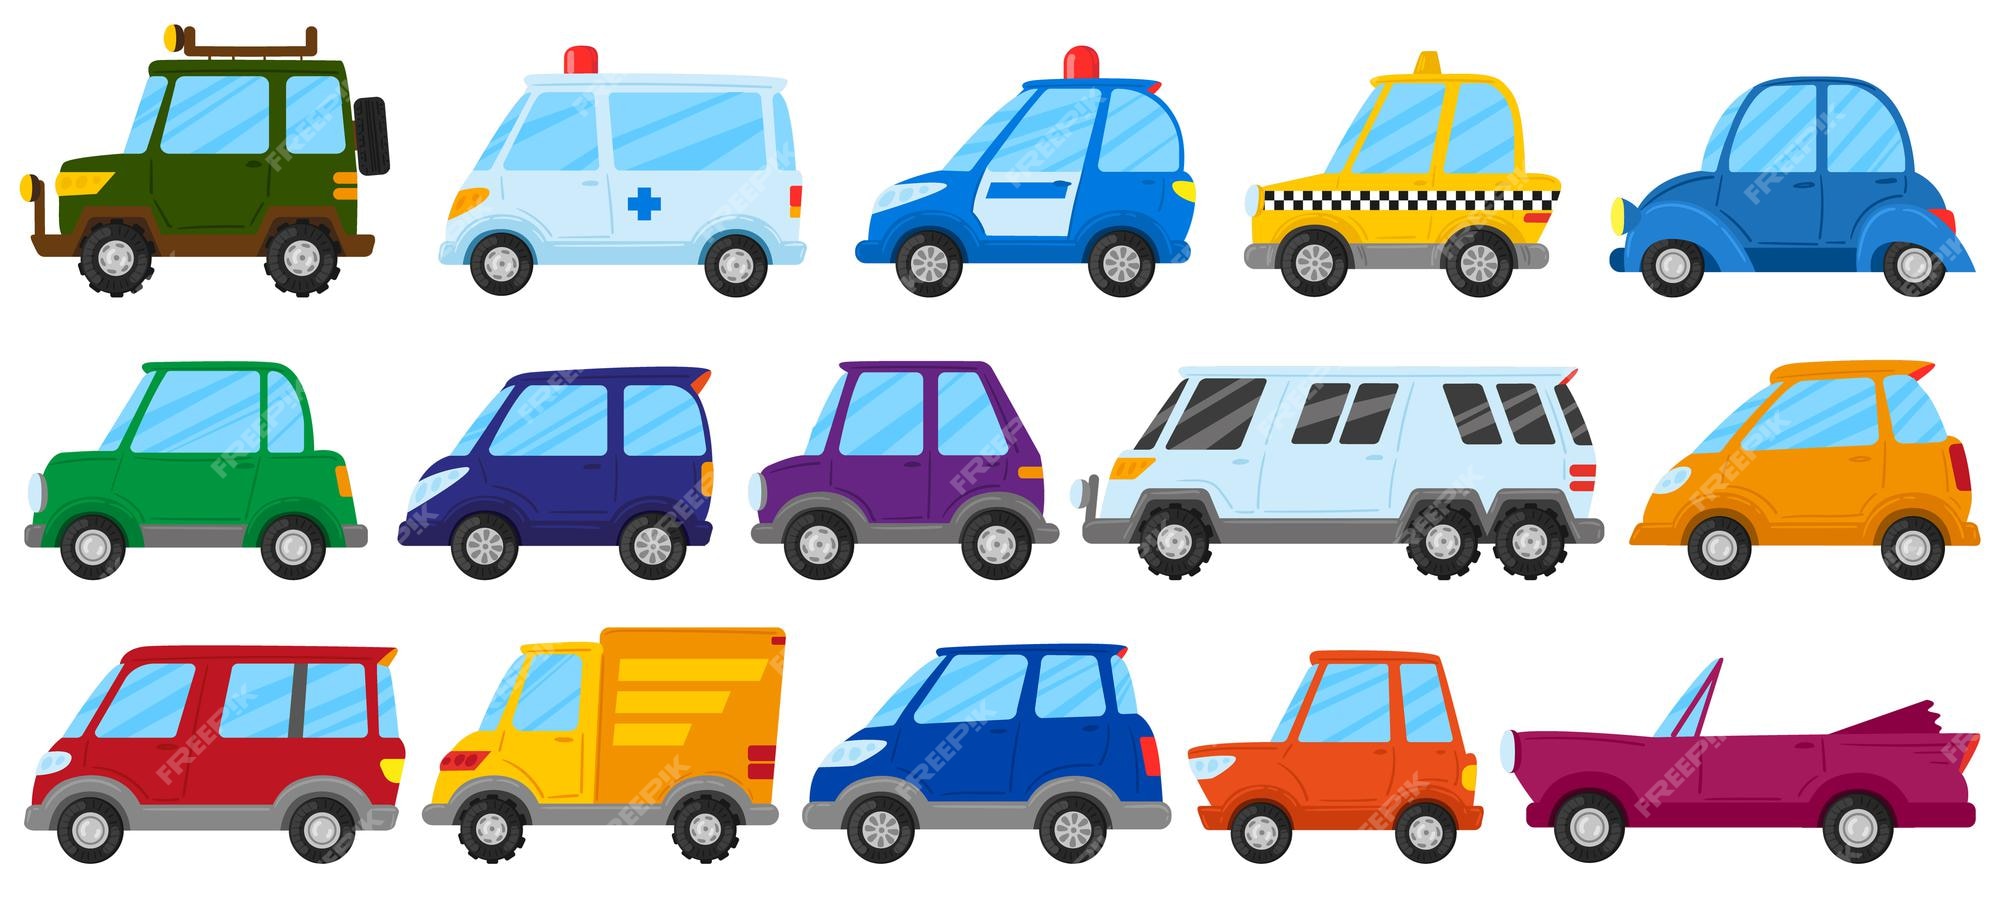 Carros de juguete para niños de dibujos animados, transporte de juego  lindo. coche de juguete para niños, camión, ambulancia y coche de policía  conjunto de ilustraciones vectoriales. vehículos infantiles coloridos |  Vector